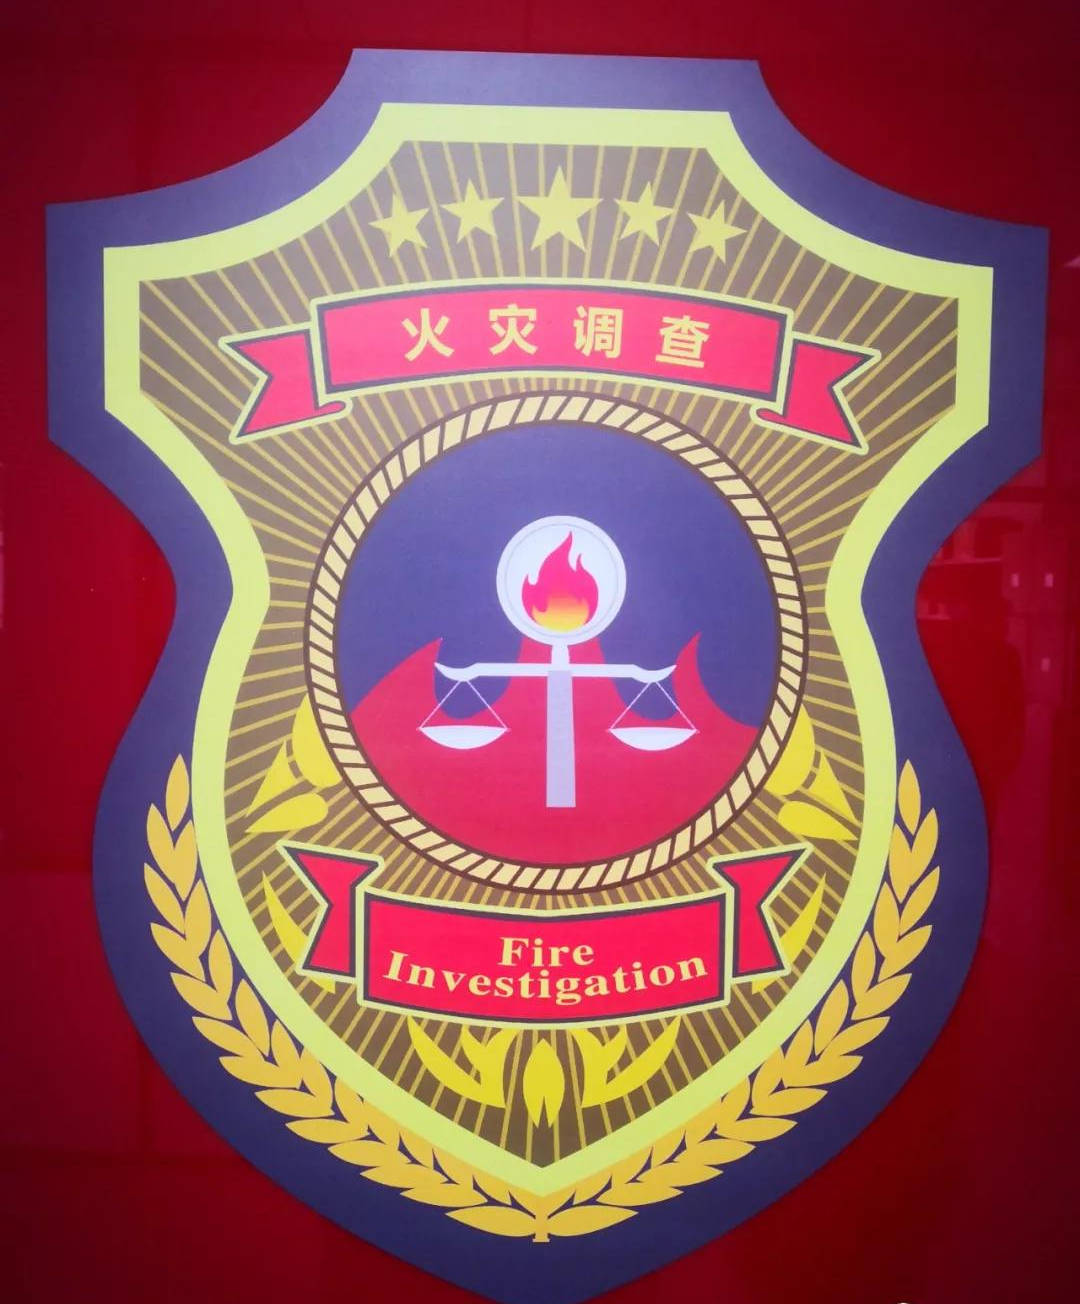 应急管理部第一届火灾调查专家组成立首届专家责任重大